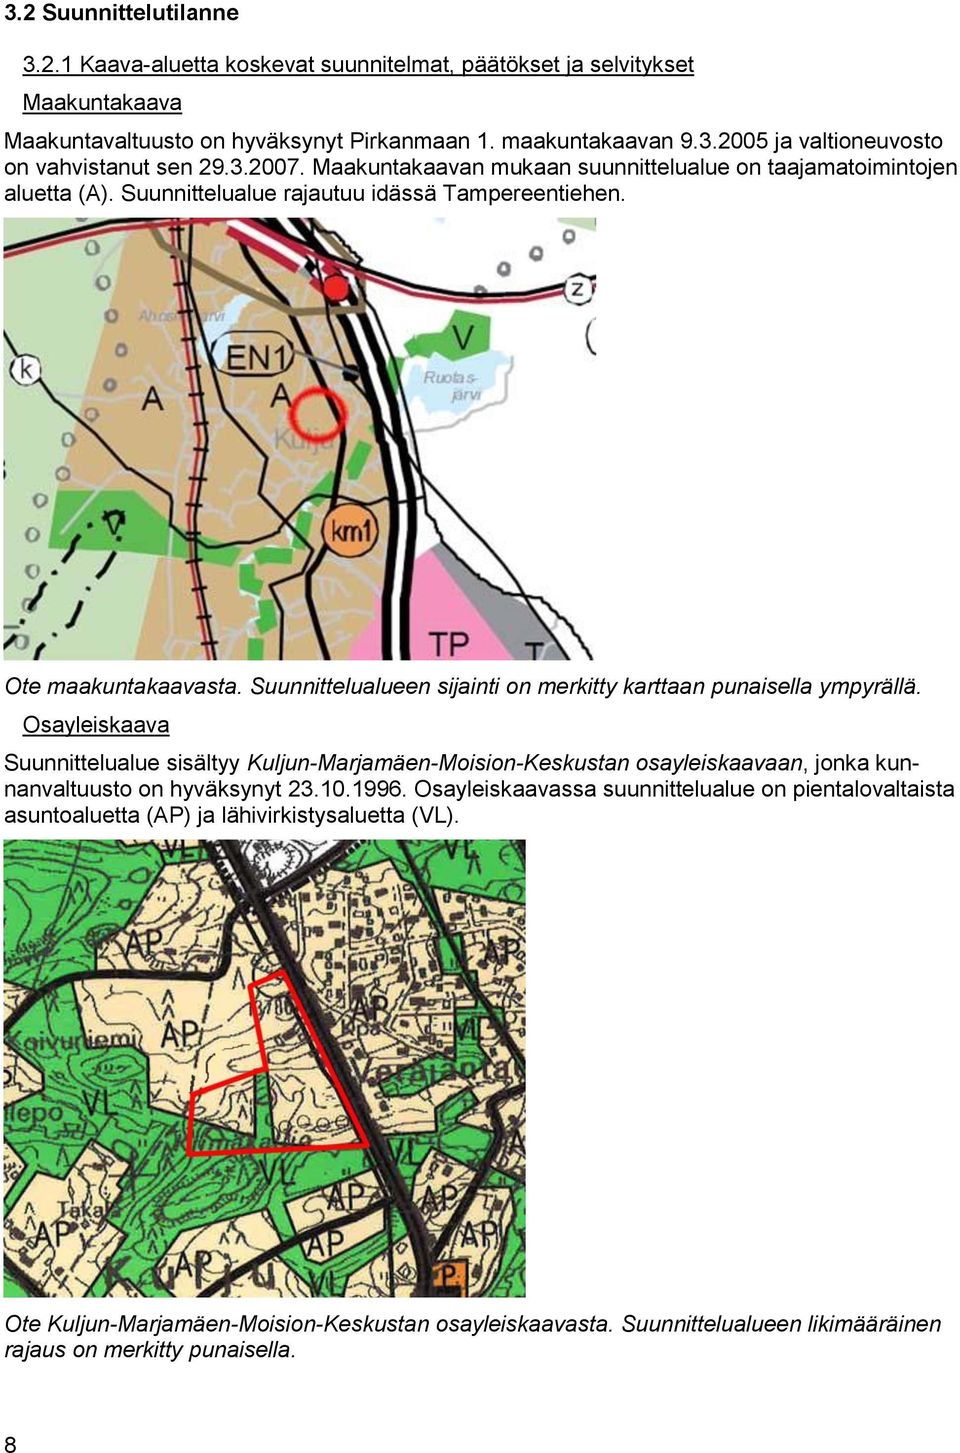 Suunnittelualueen sijainti on merkitty karttaan punaisella ympyrällä. Osayleiskaava Suunnittelualue sisältyy Kuljun-Marjamäen-Moision-Keskustan osayleiskaavaan, jonka kunnanvaltuusto on hyväksynyt 23.